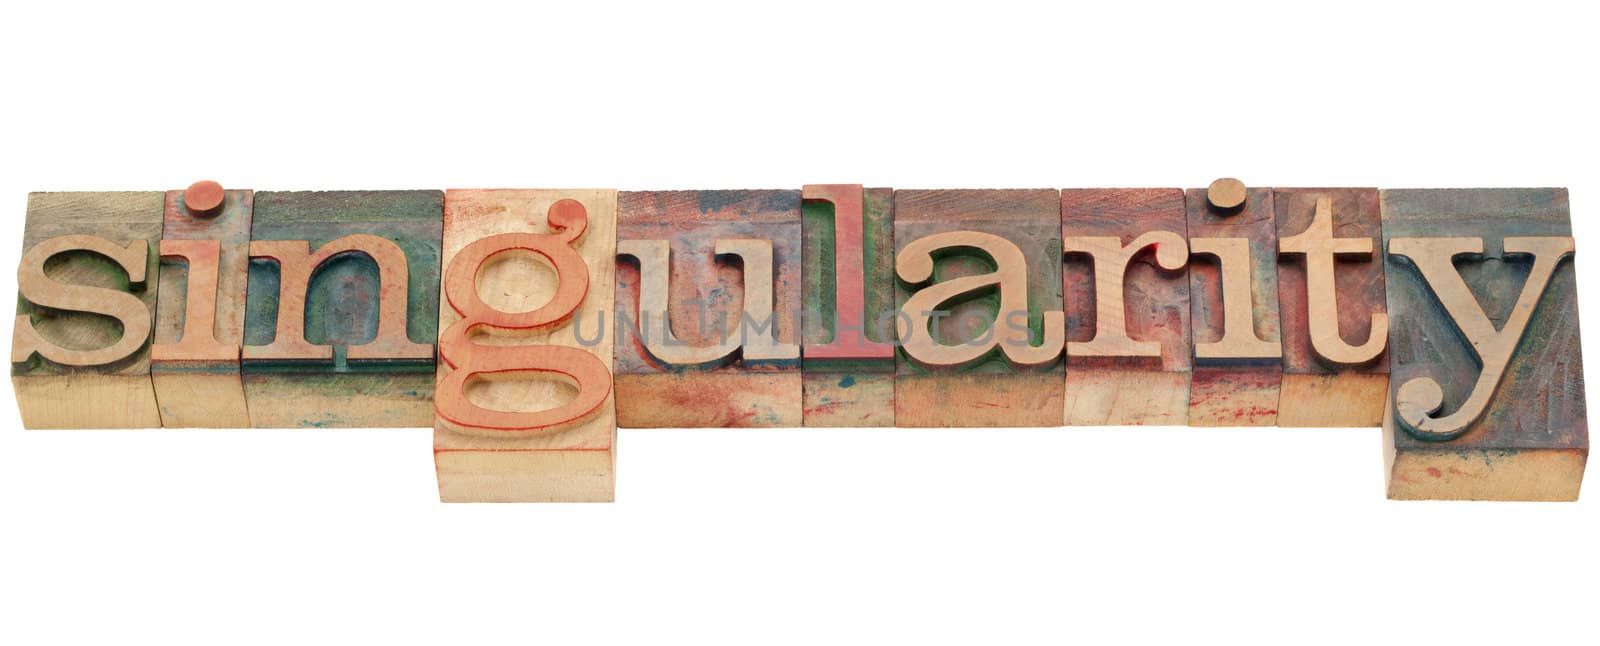 singularity - isolated word in vintage wood letterpress printing blocks